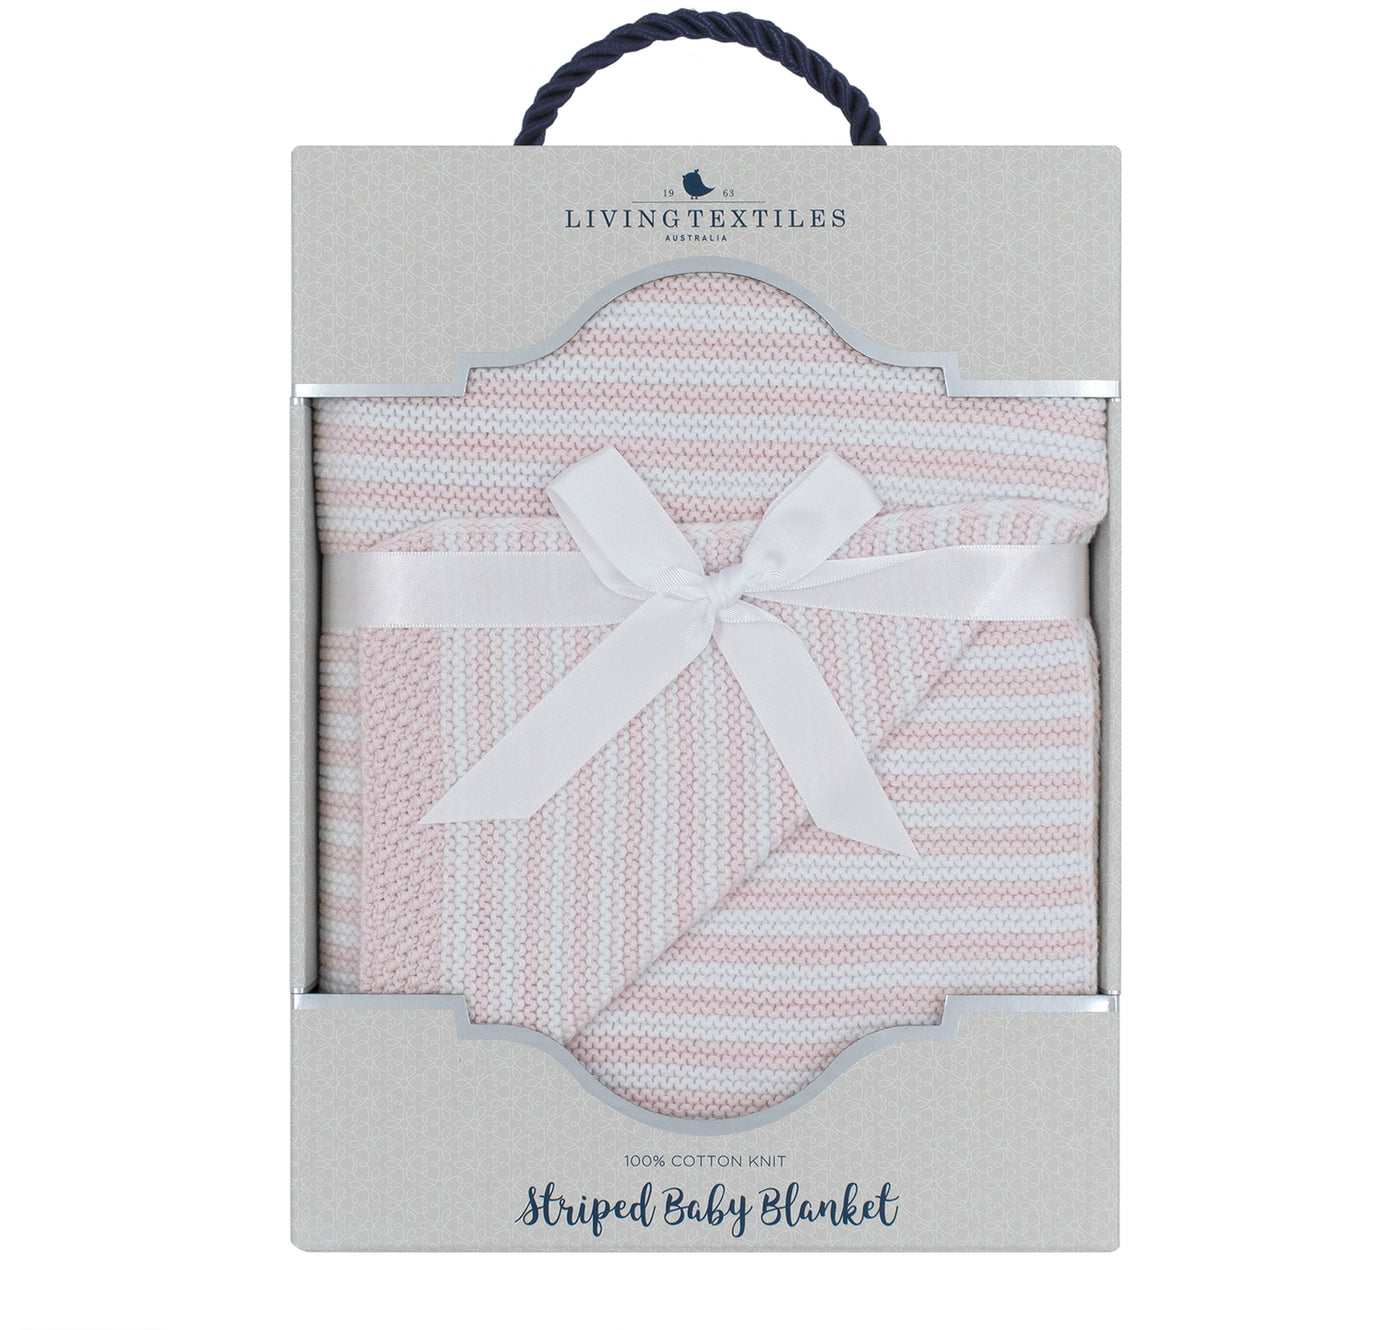 粉紅色/白色 100% 棉針織條紋嬰兒毯